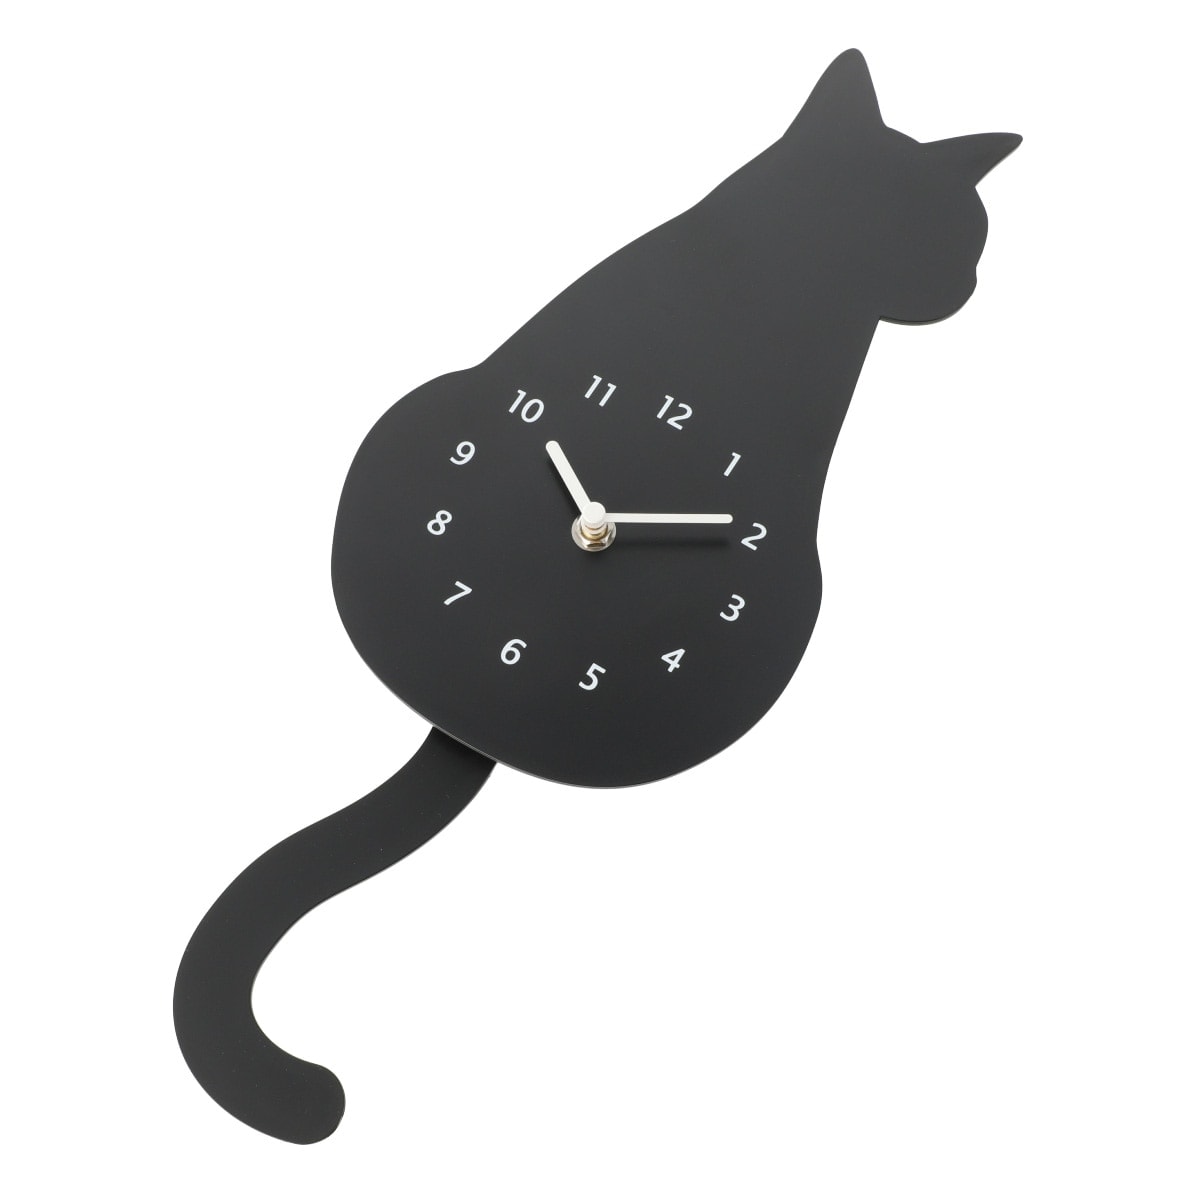 掛け時計 黒猫